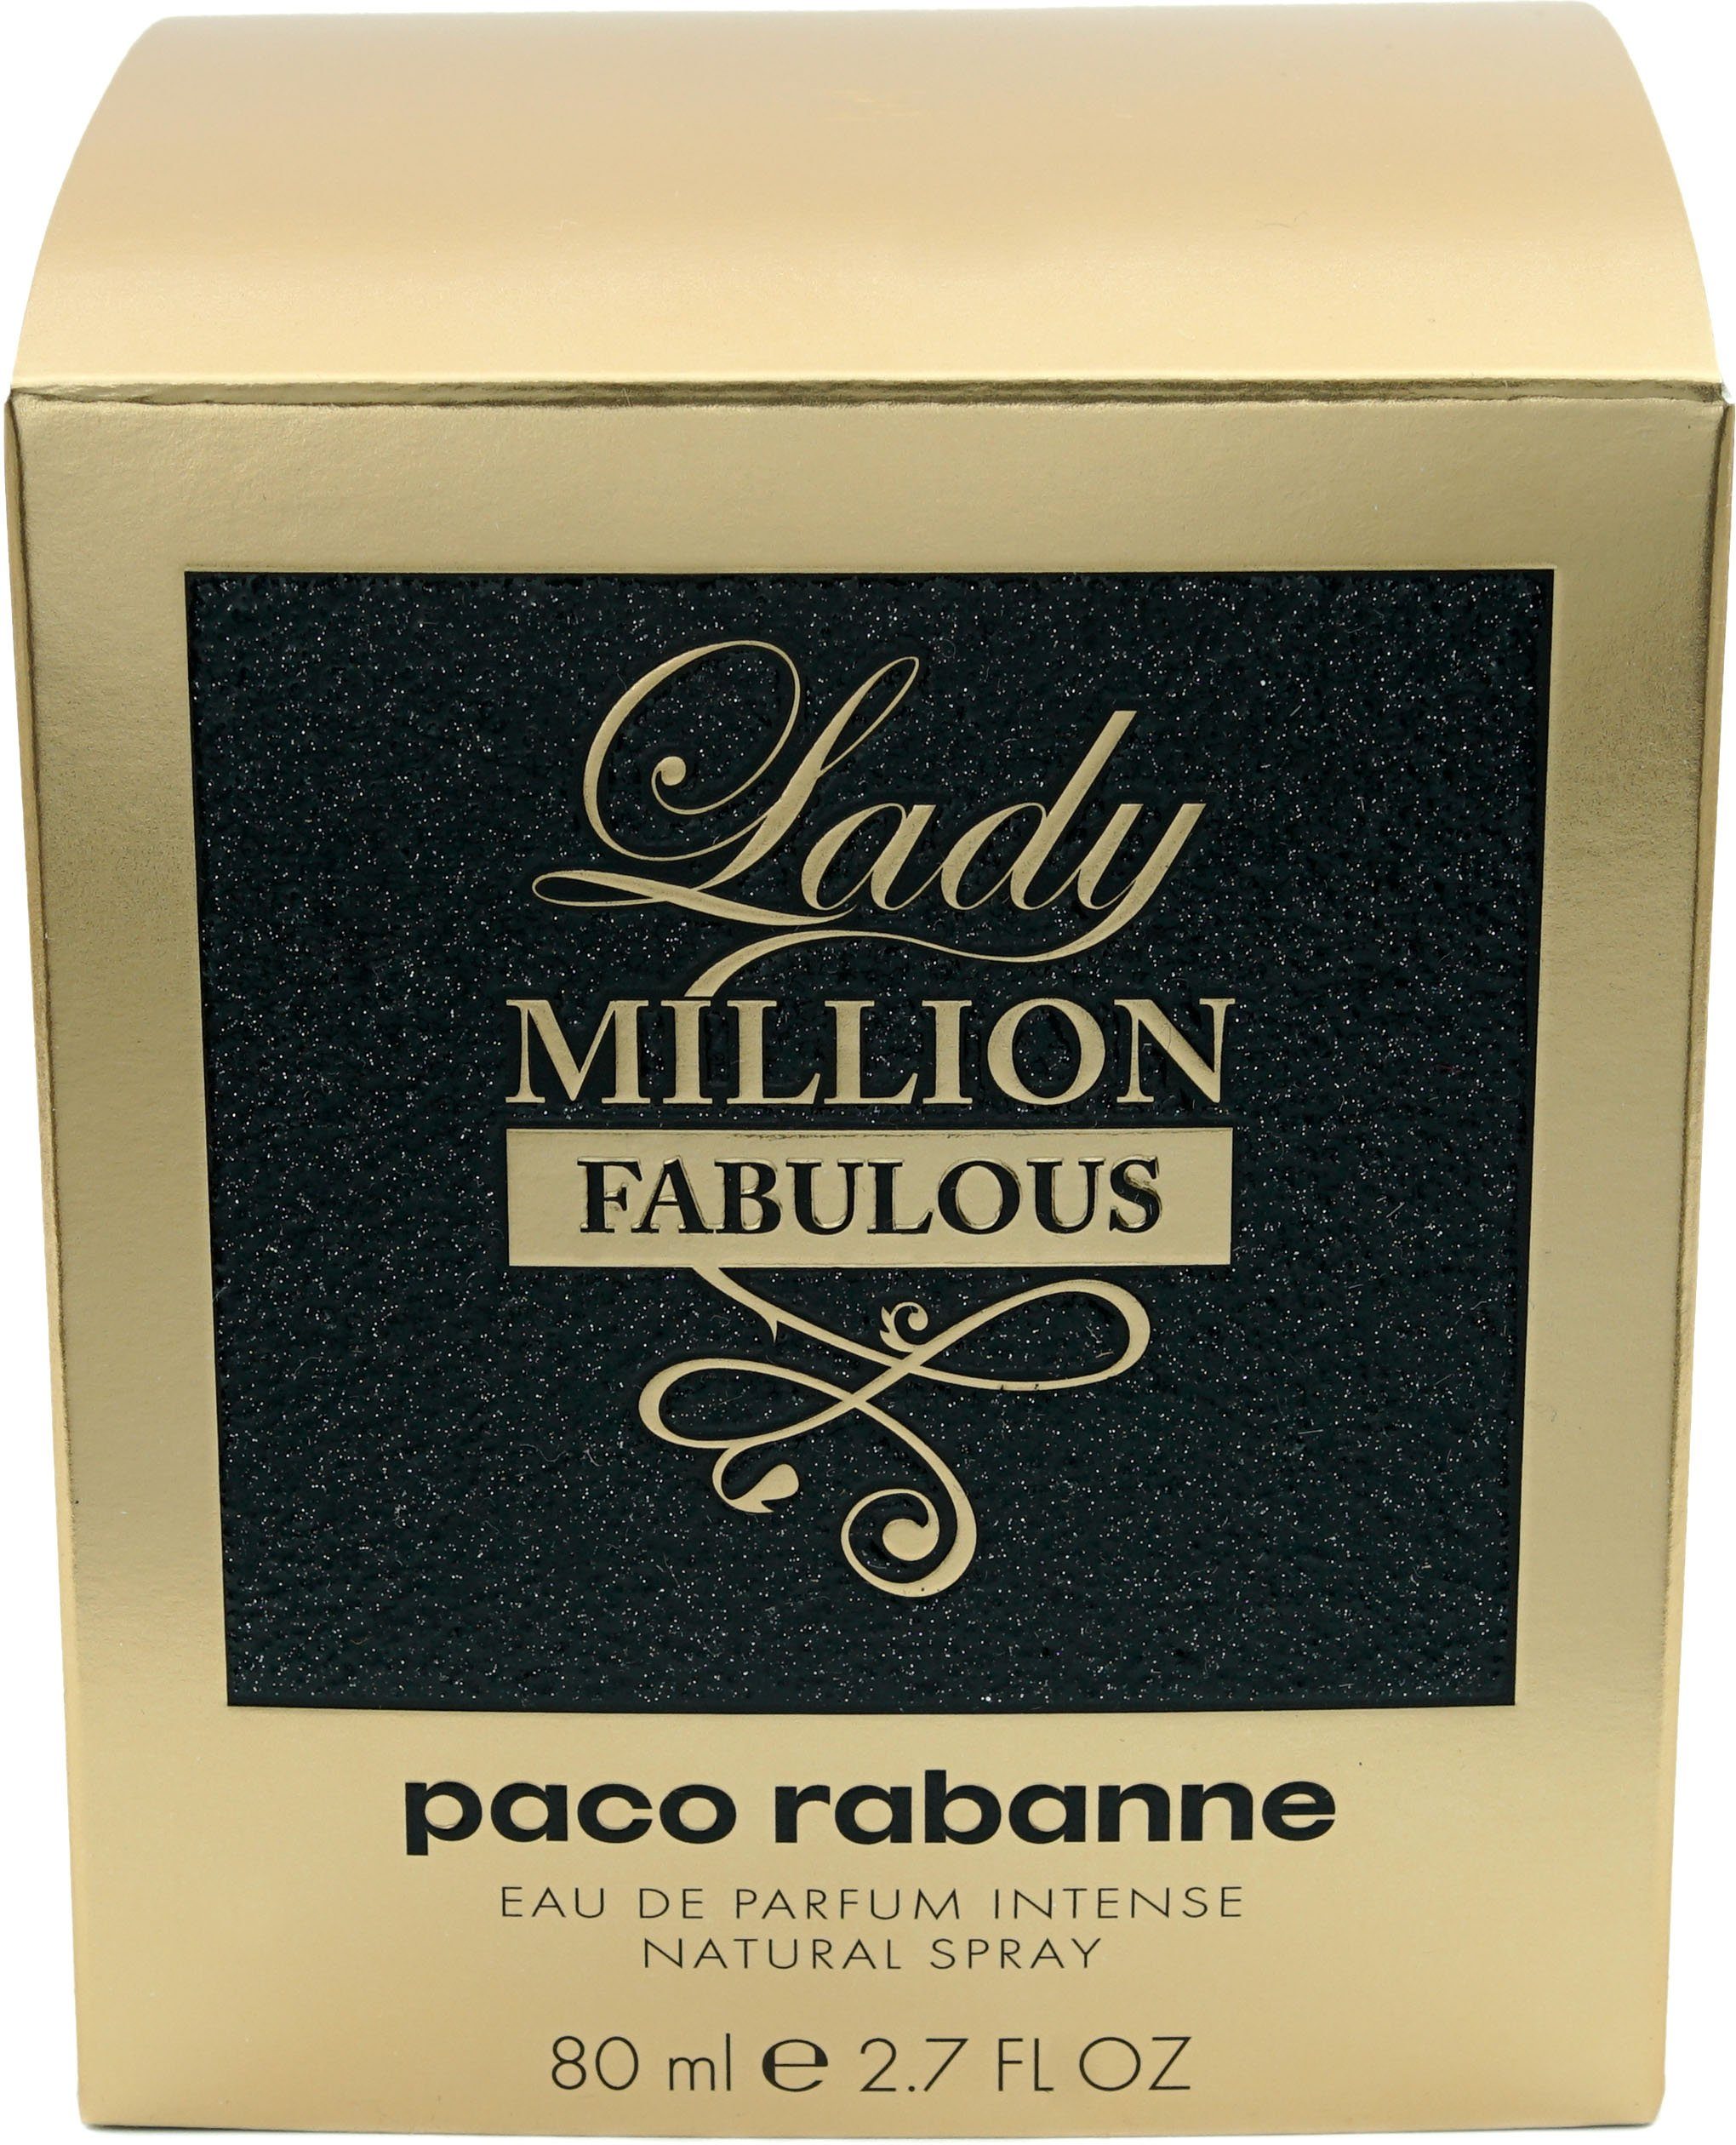 Eau Fabulous rabanne de Parfum Million paco Lady